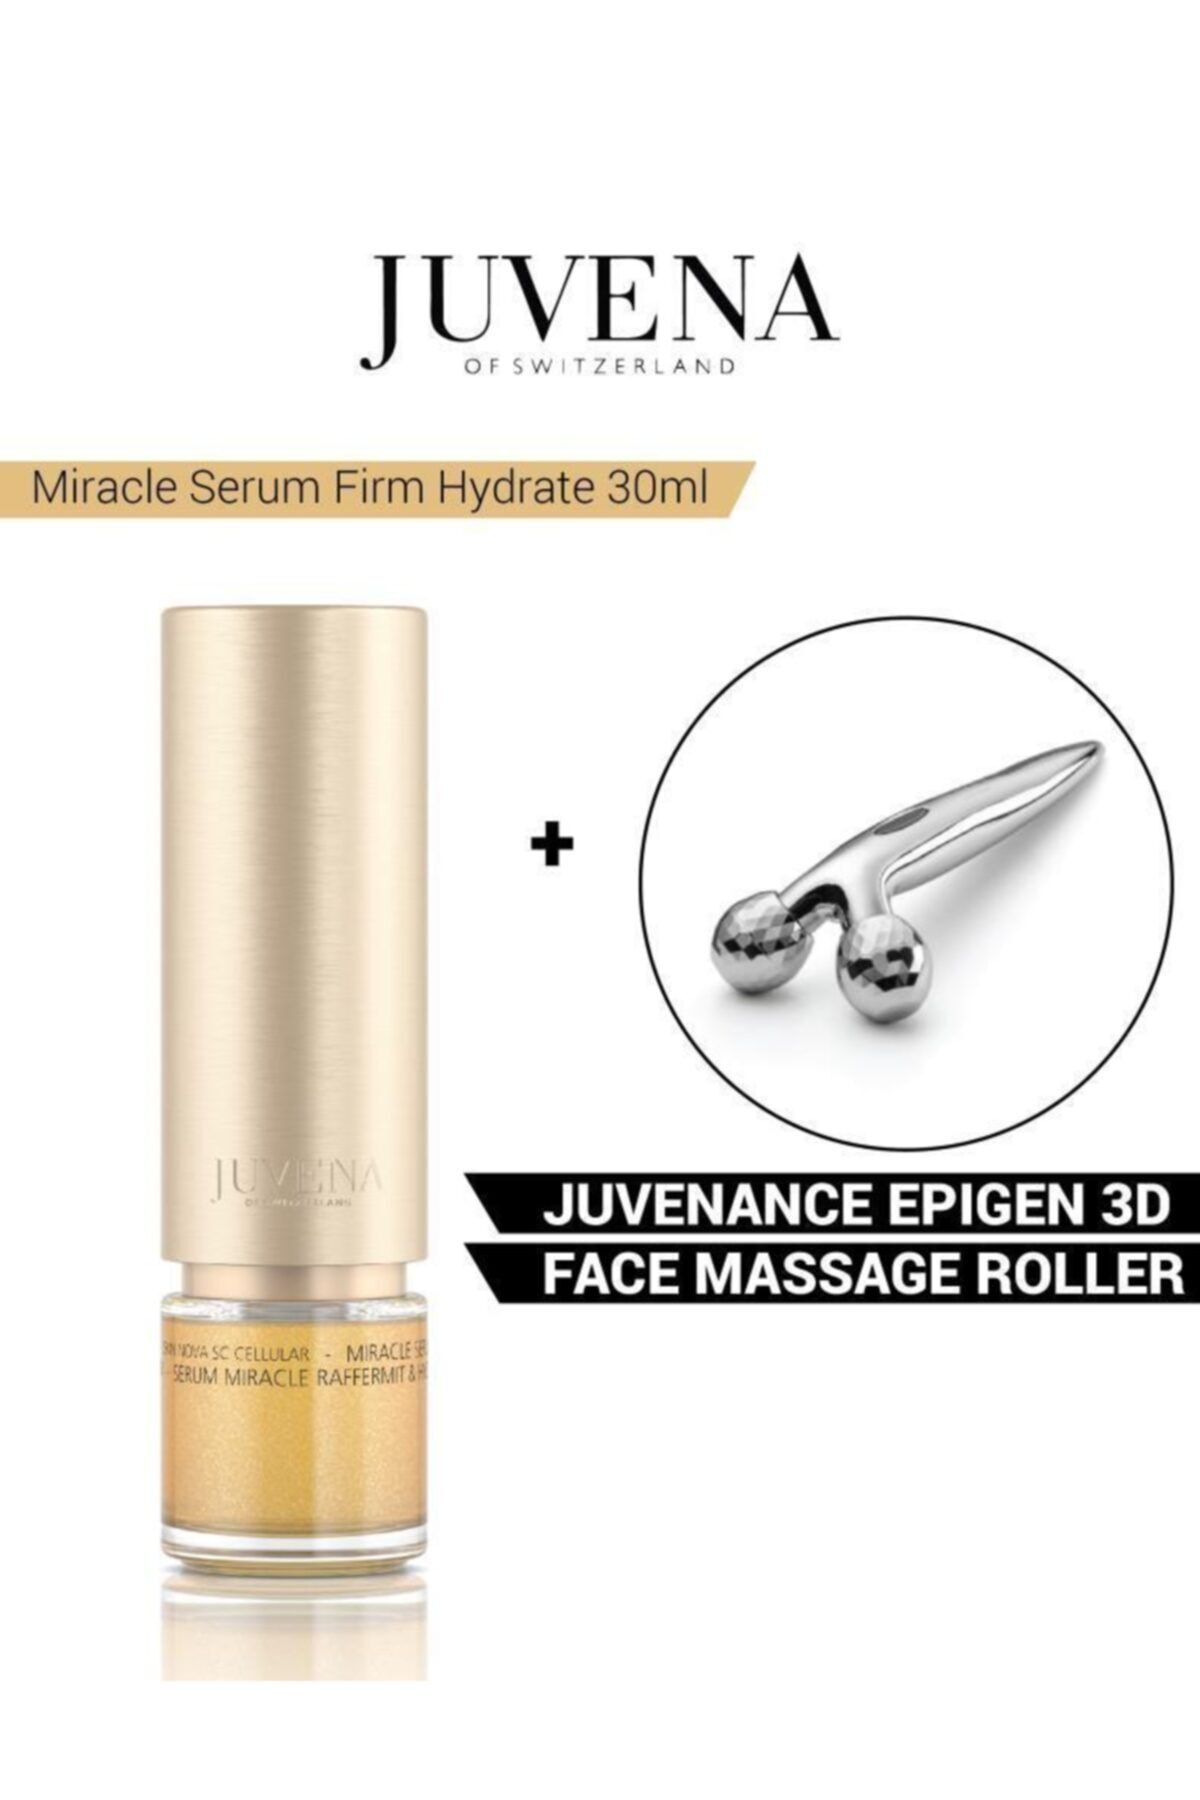 Juvena Miracle Serum Firm Hydtrate 30ml+epigen 3d Face Massage Roller